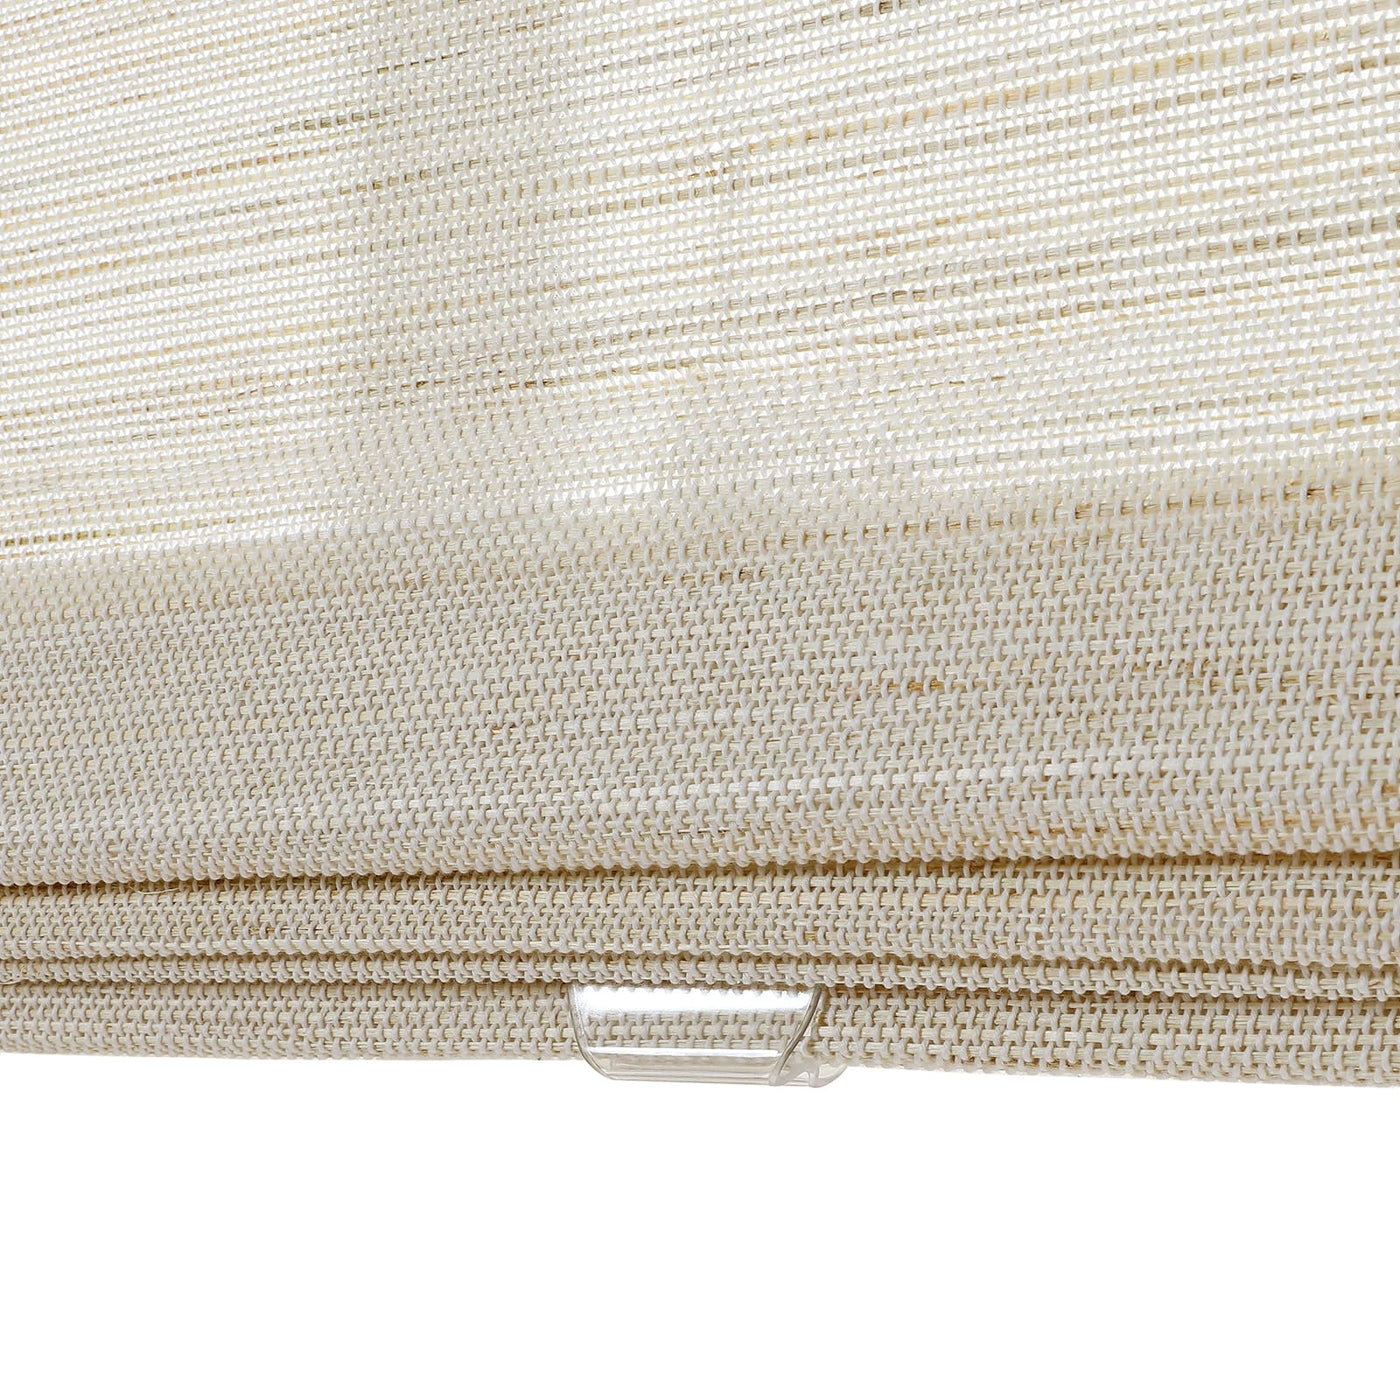 Natural Ramie Bamboo Woven Shade - Wall White